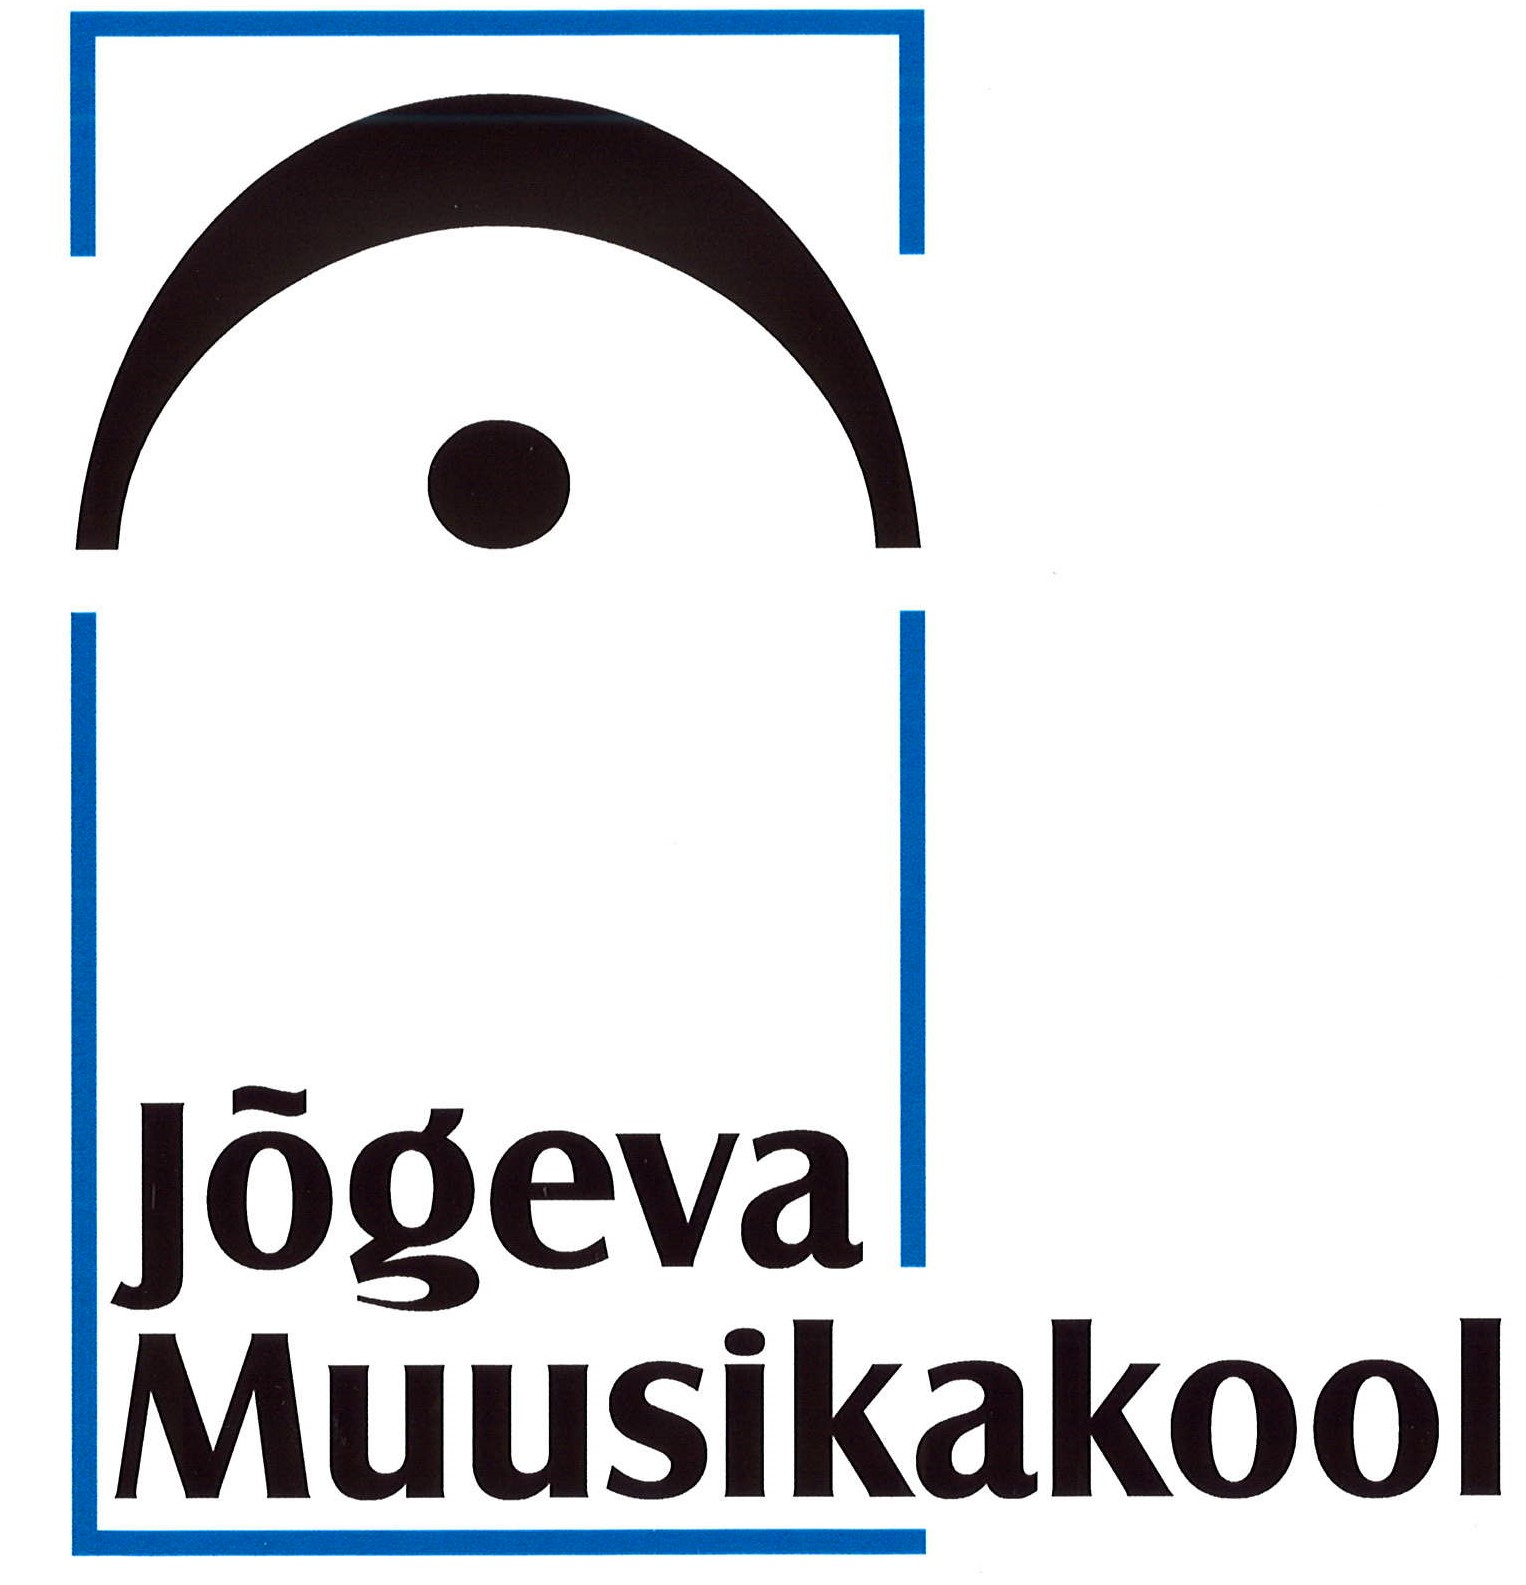 Jõgeva Muusikakooli logo